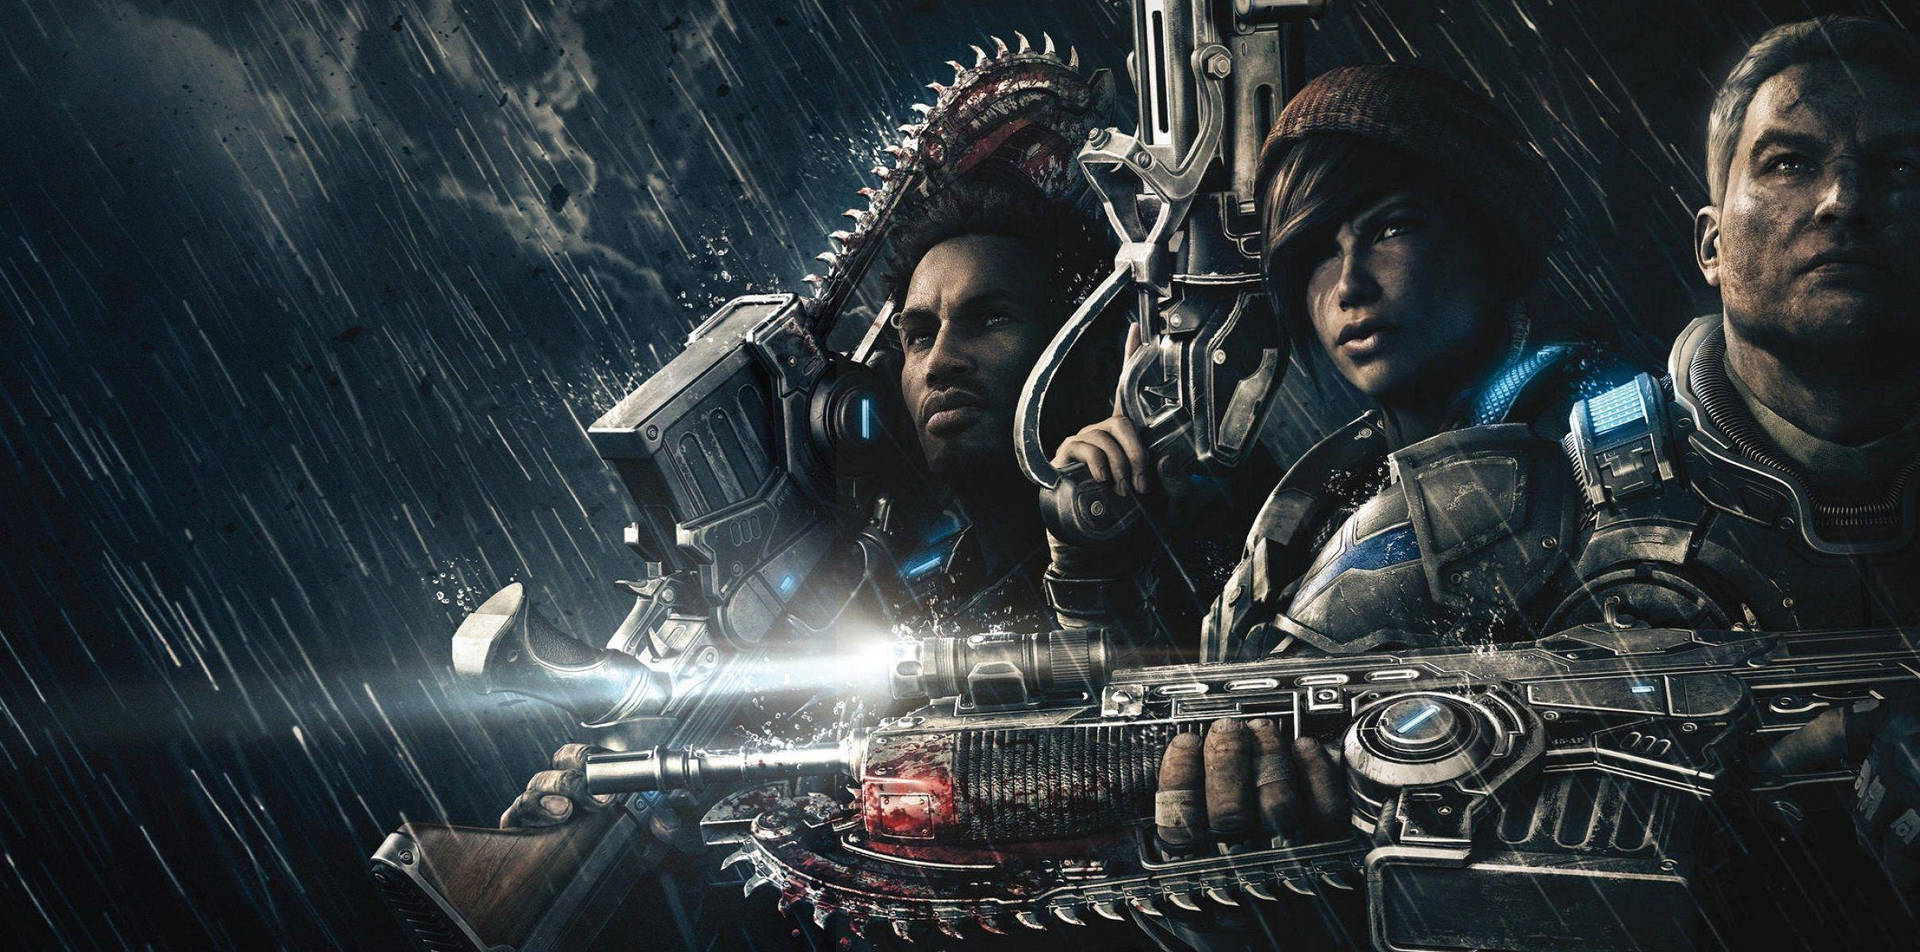 Personajede Gears Of War 4 Bajo La Lluvia Fondo de pantalla